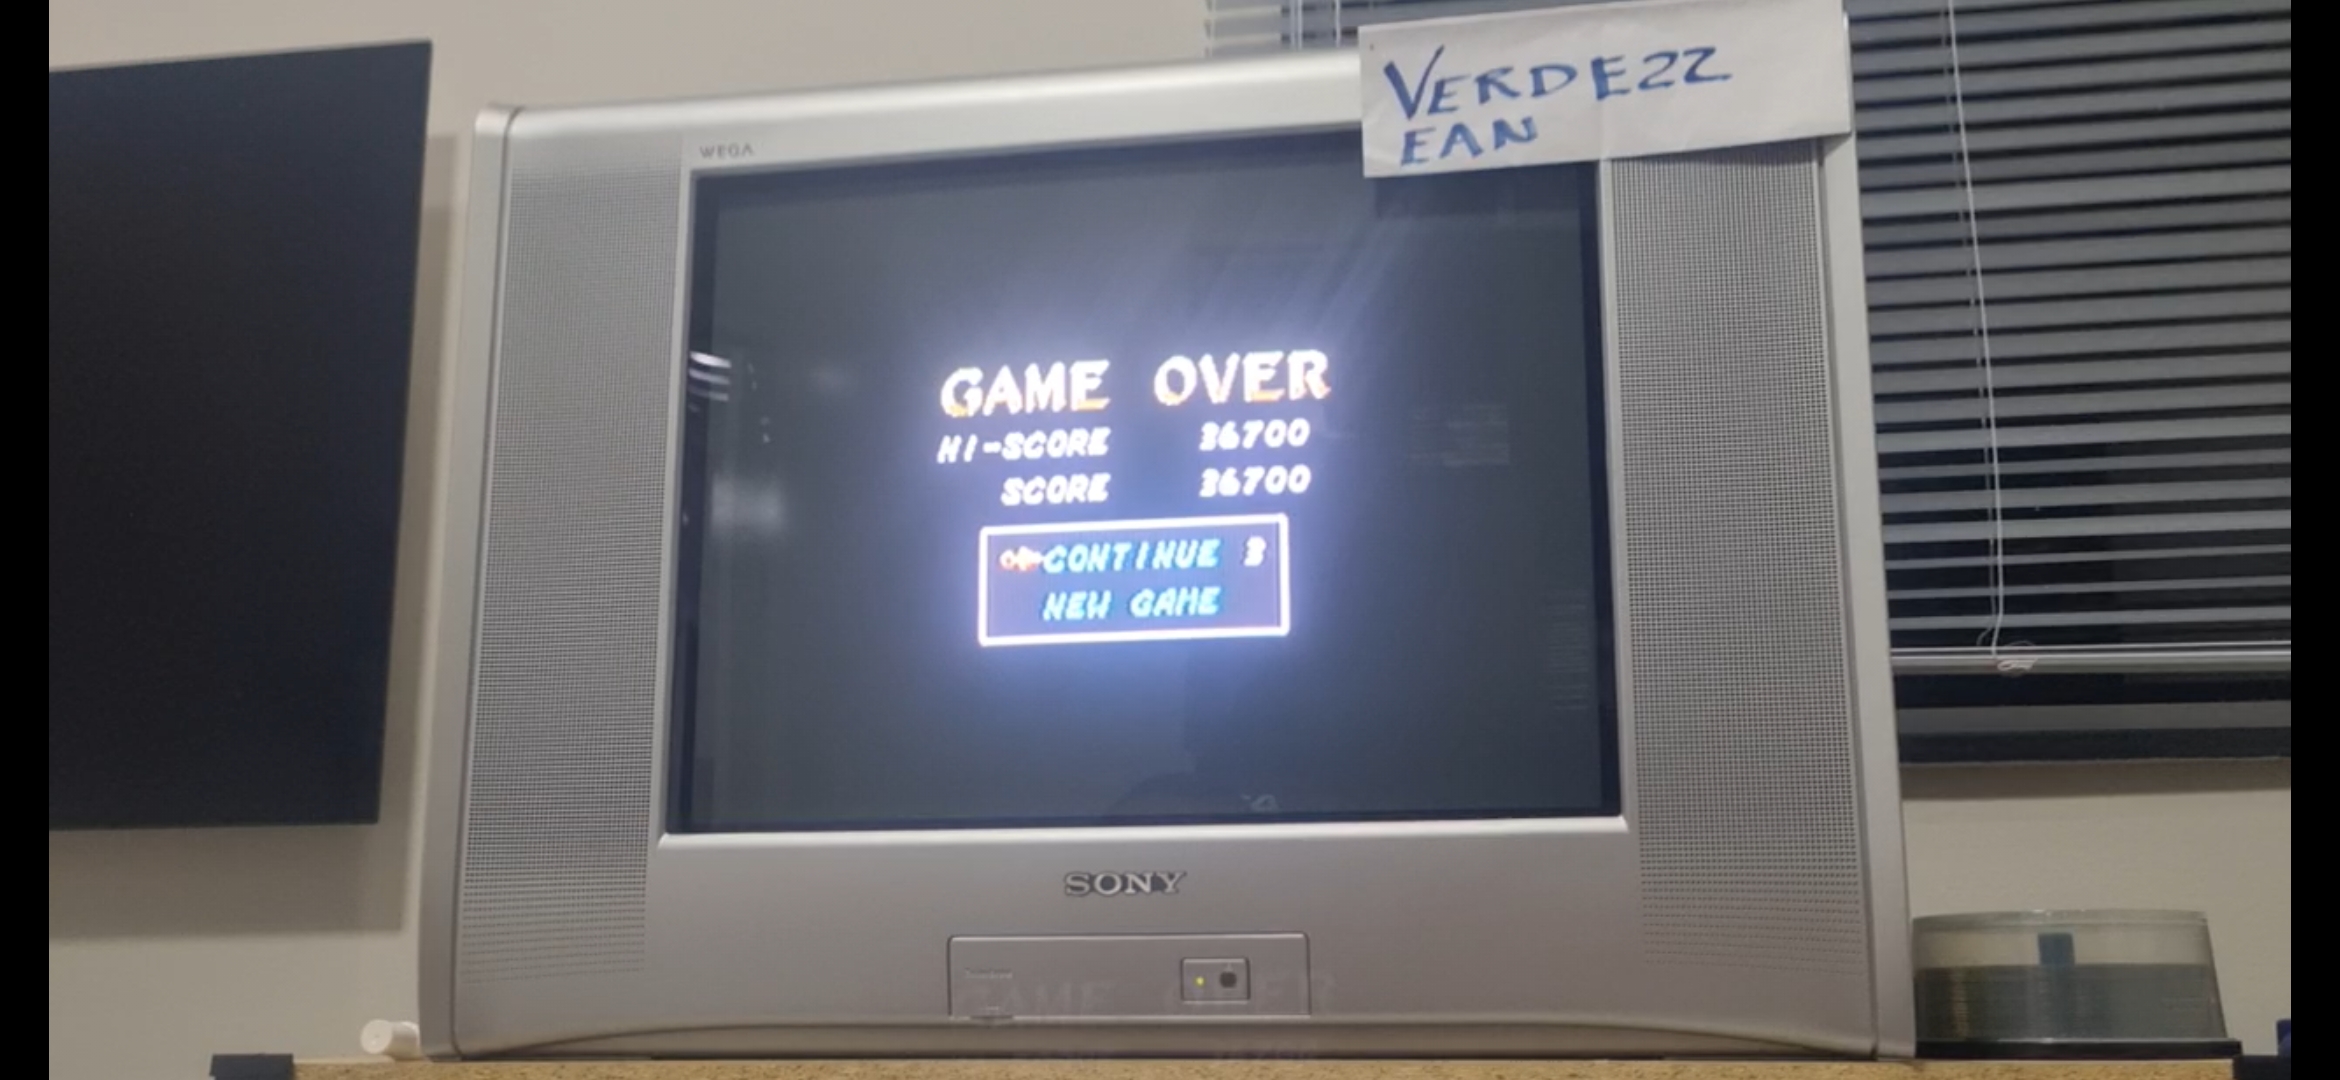 Verde22: Sega Smash Pack: The Revenge Of Shinobi (Dreamcast) 36,700 points on 2022-08-18 19:32:27